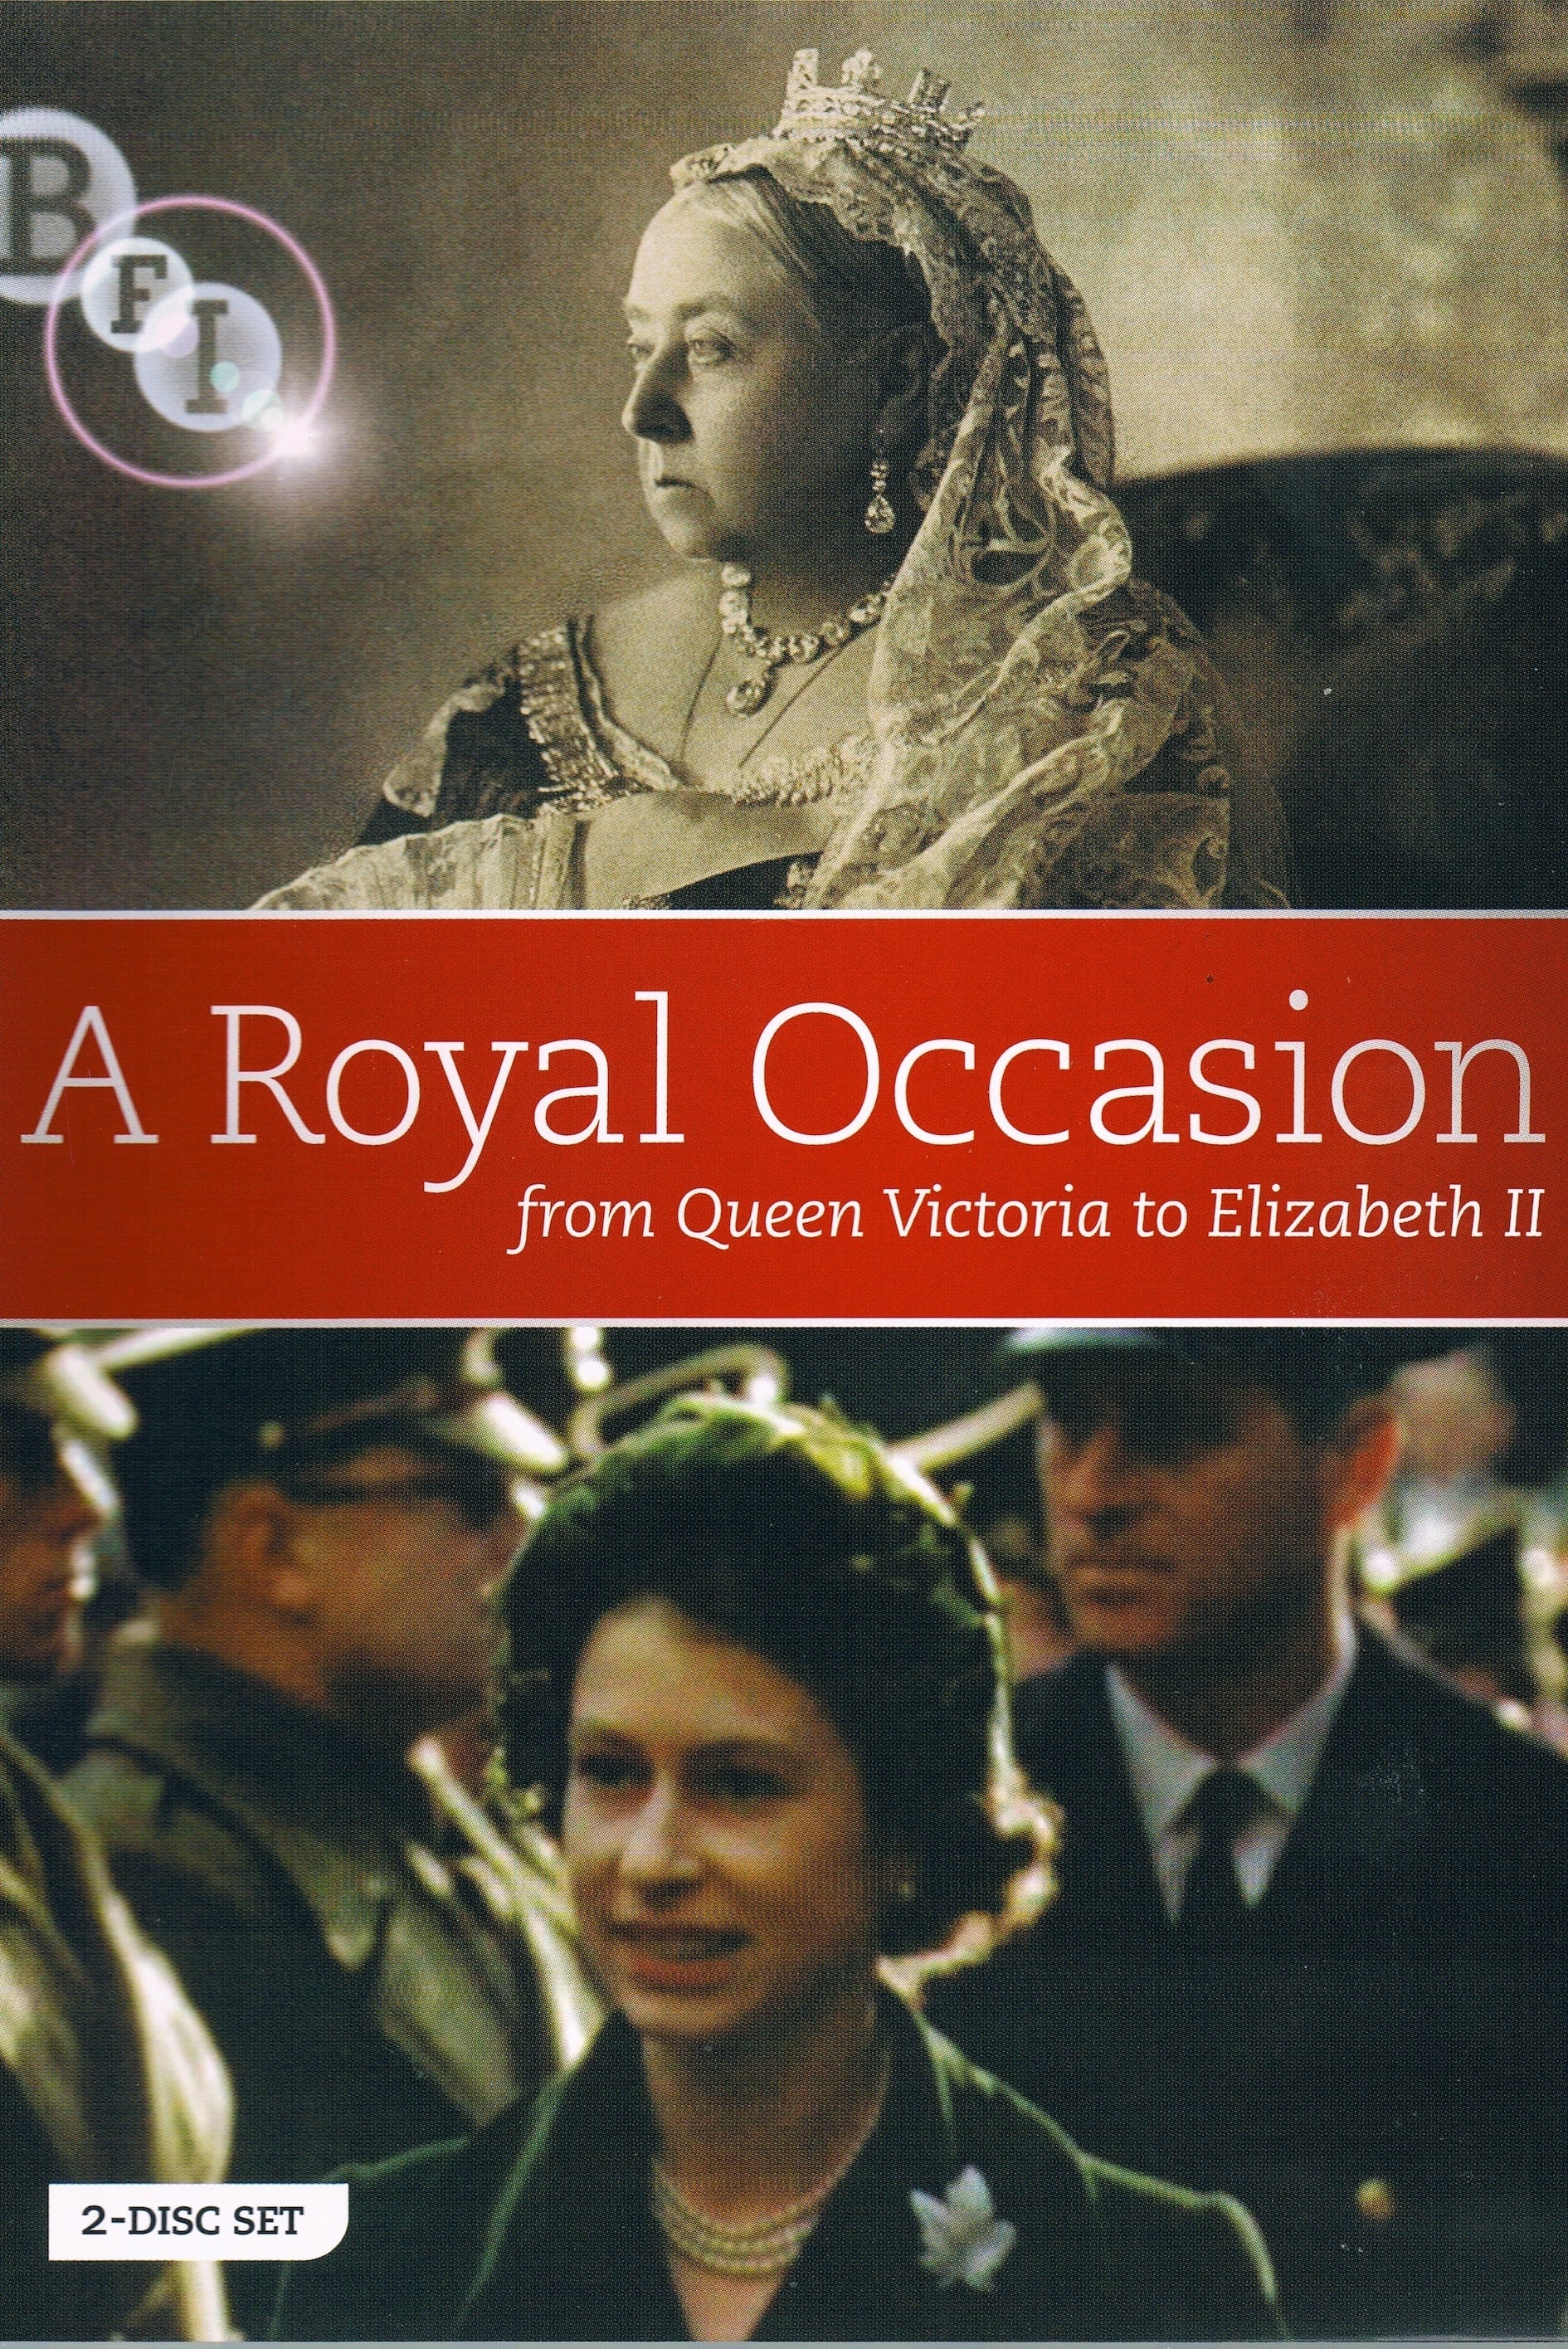 Queen Victoria's Diamond Jubilee Procession